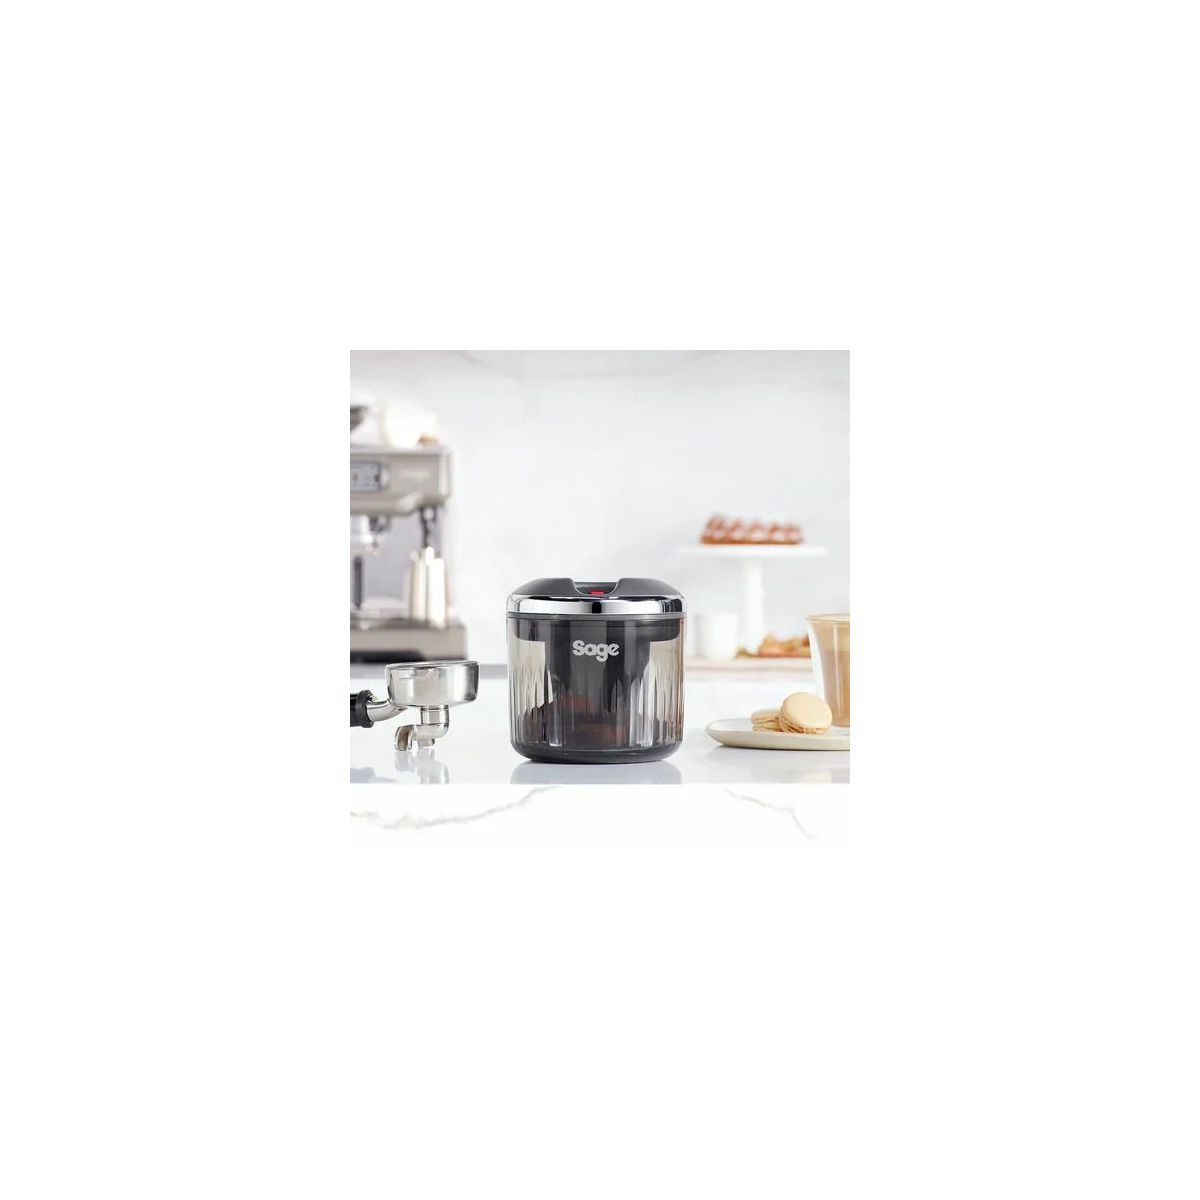 Support pour capsules de café - 18 capsules - compatible avec les capsules  dolce gusto - acier inoxydable - kapsulas Don Hierro